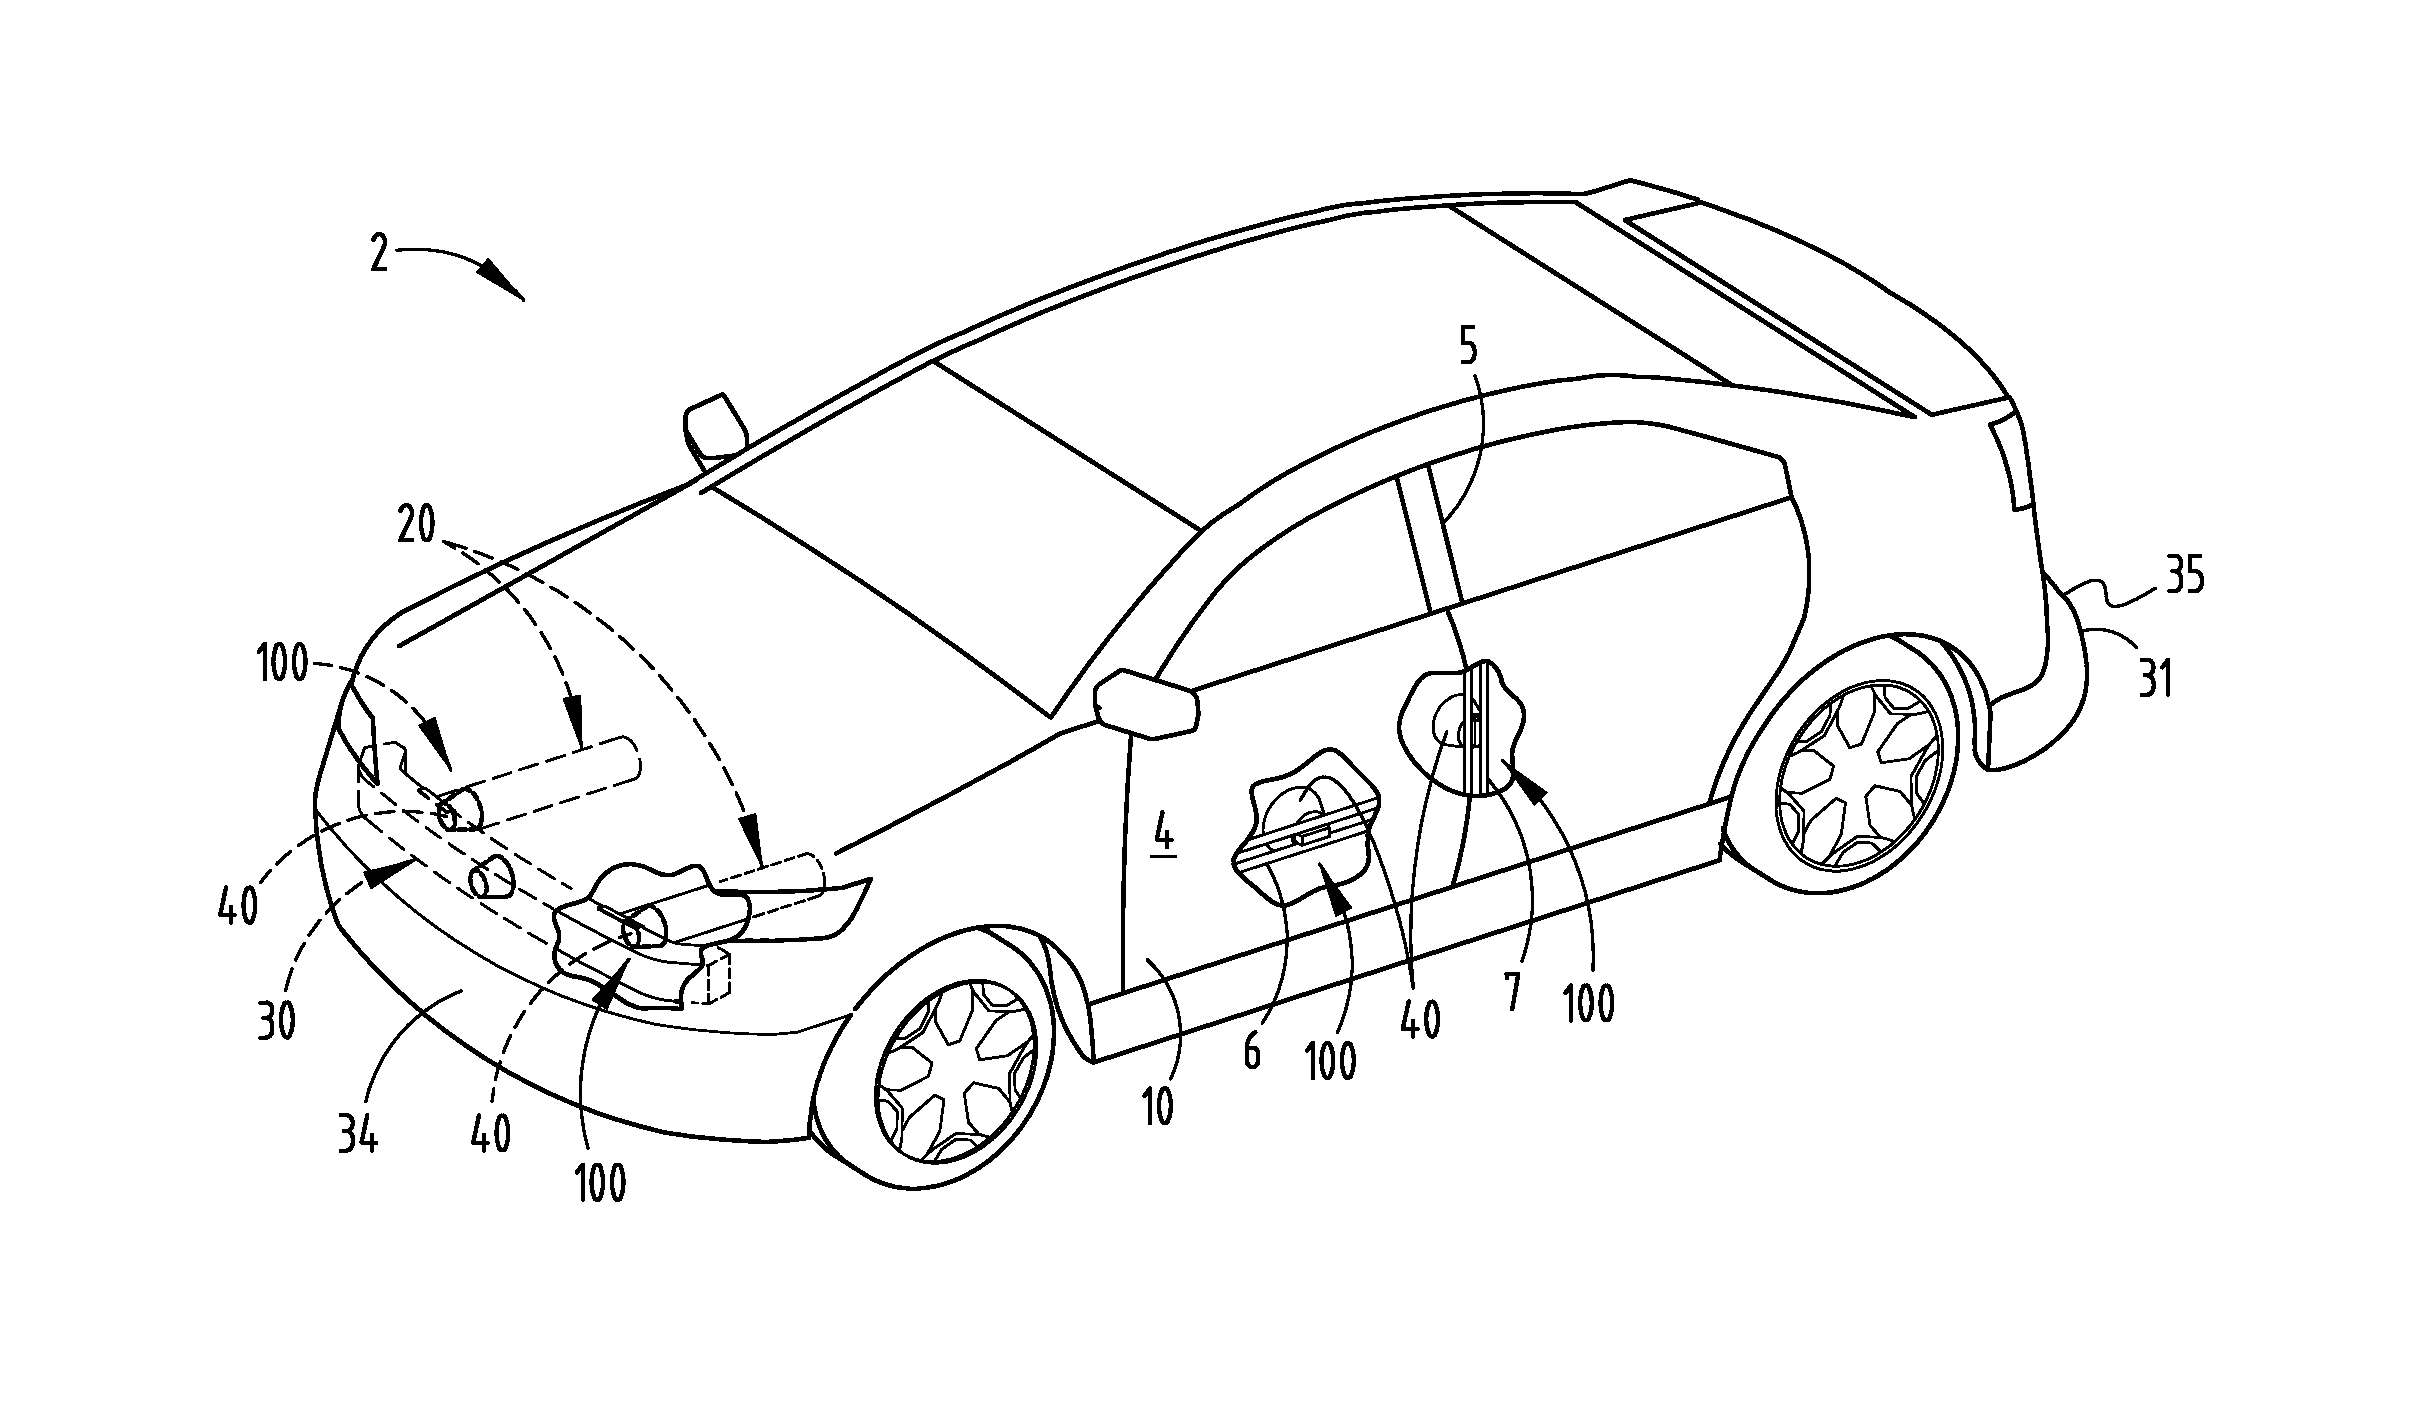 Vehicle impact sensing system